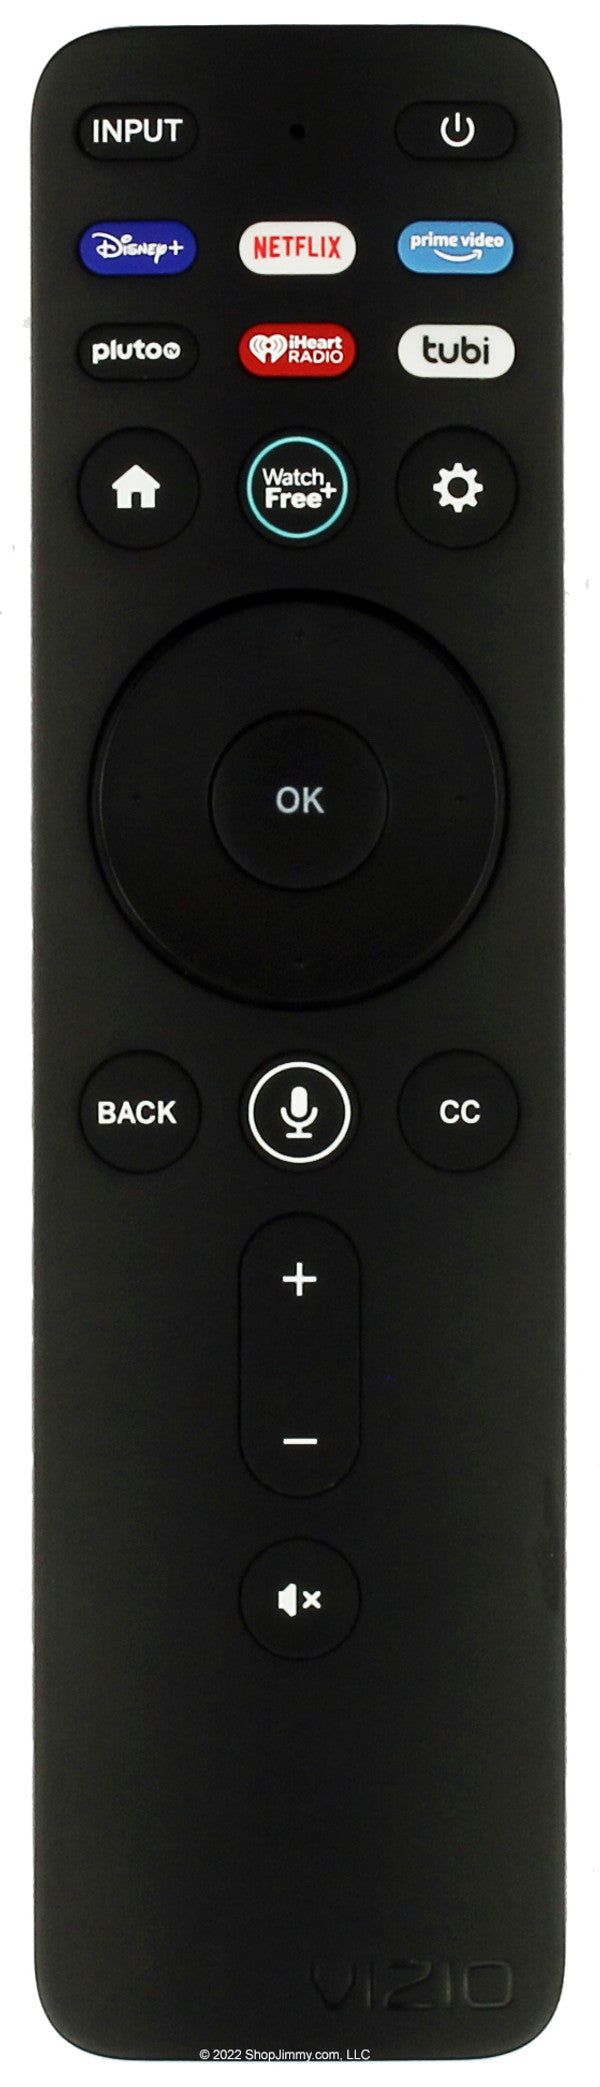 Vizio Remote Control XRT260